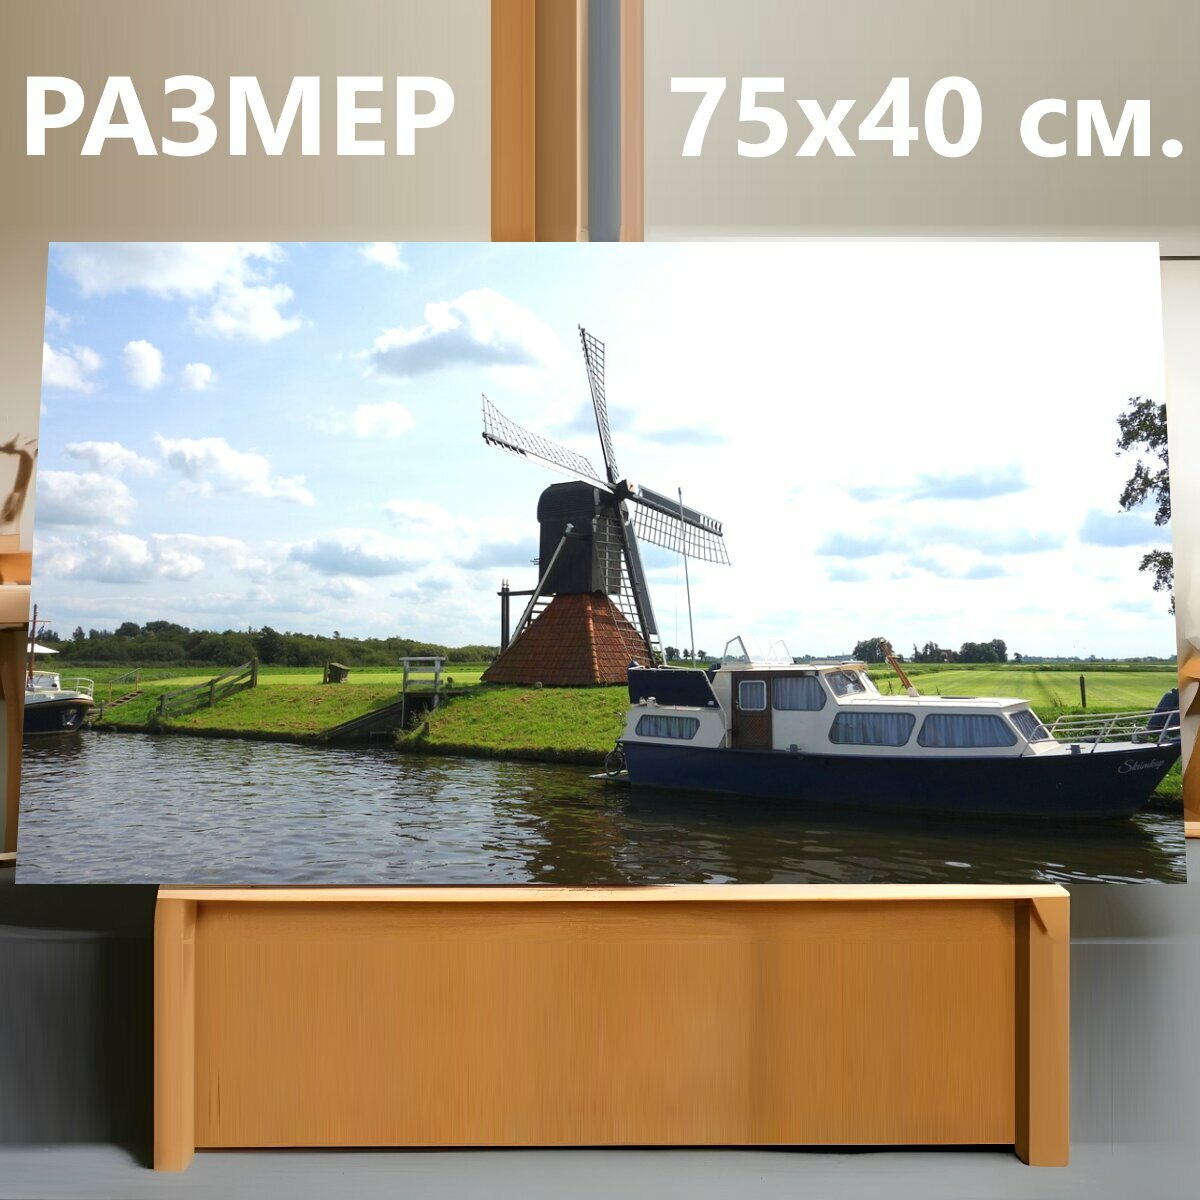 Картина на холсте "Мельница, голландская ветряная мельница, лопасти ветряной мельницы" на подрамнике 75х40 см. для интерьера